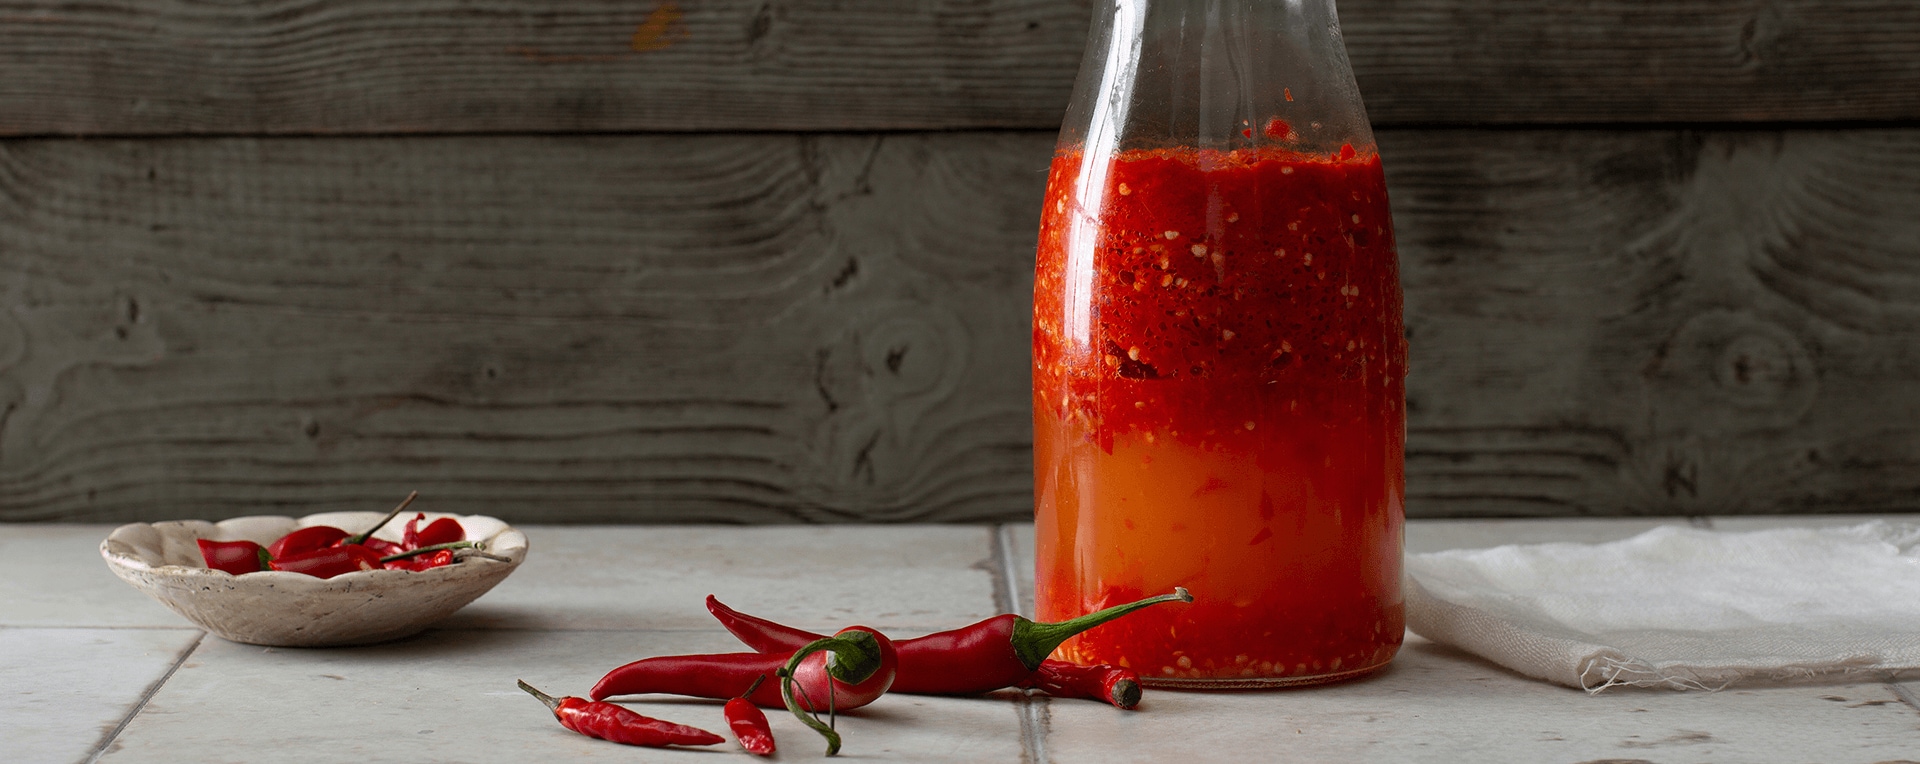 Sriracha: Fermentierte Chili-Sauce